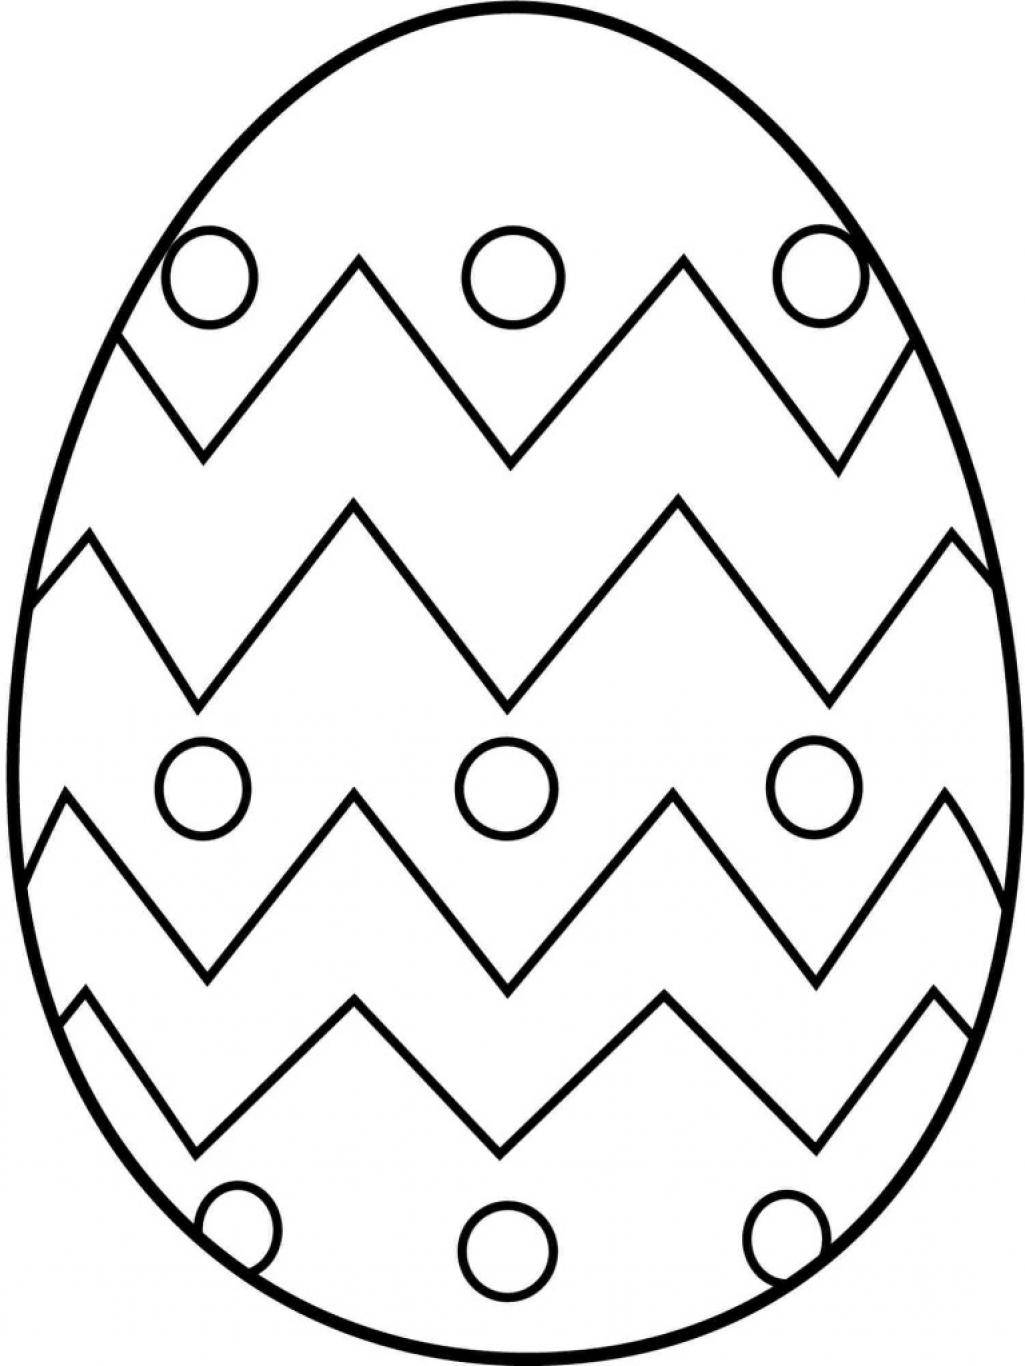 Название: Раскраска Яйцо с узорами. Категория: Узоры для раскрашивания яиц. Теги: яйцо, узоры.